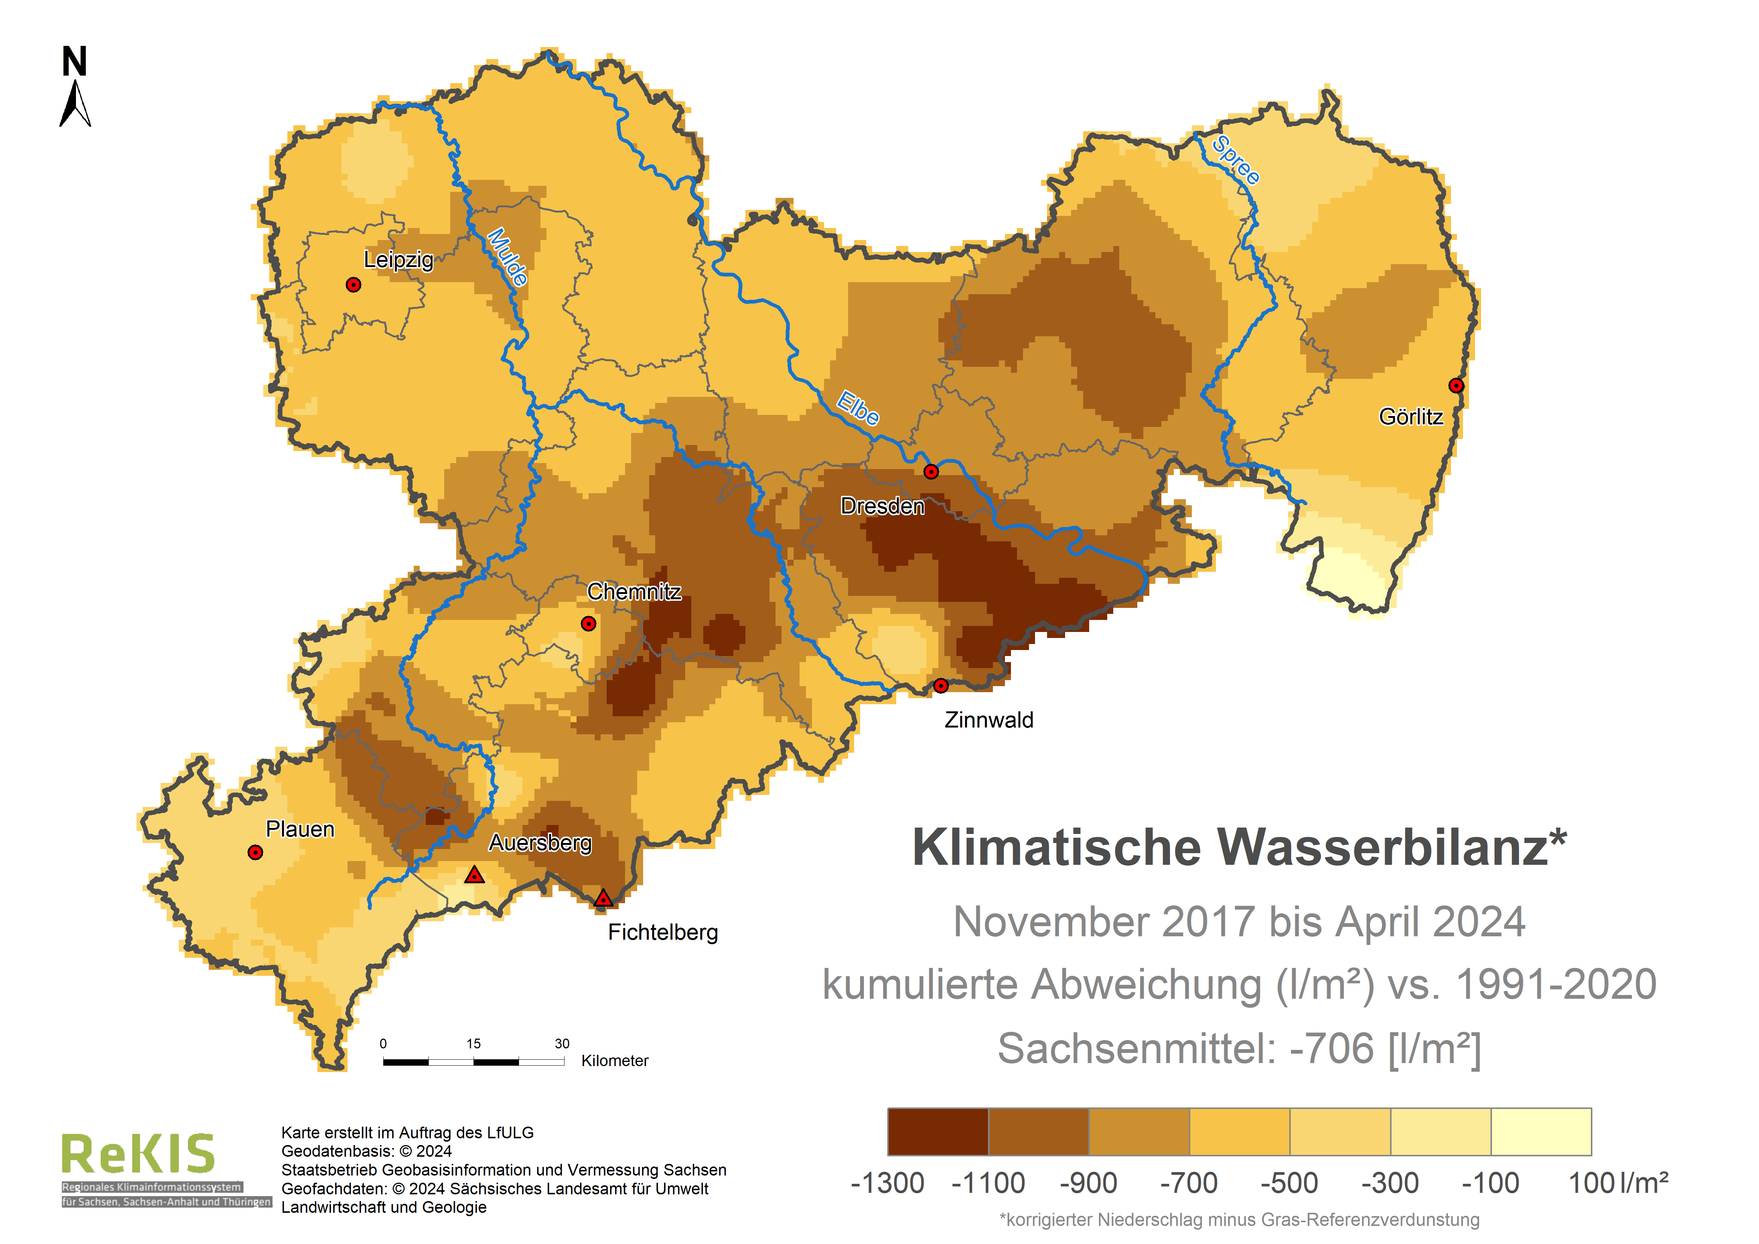 Karte Sachsen mit Darstellung der Klimatischen Wasserbilanz im Vergleich zum Referenzzeitraum 1991 bis 2020